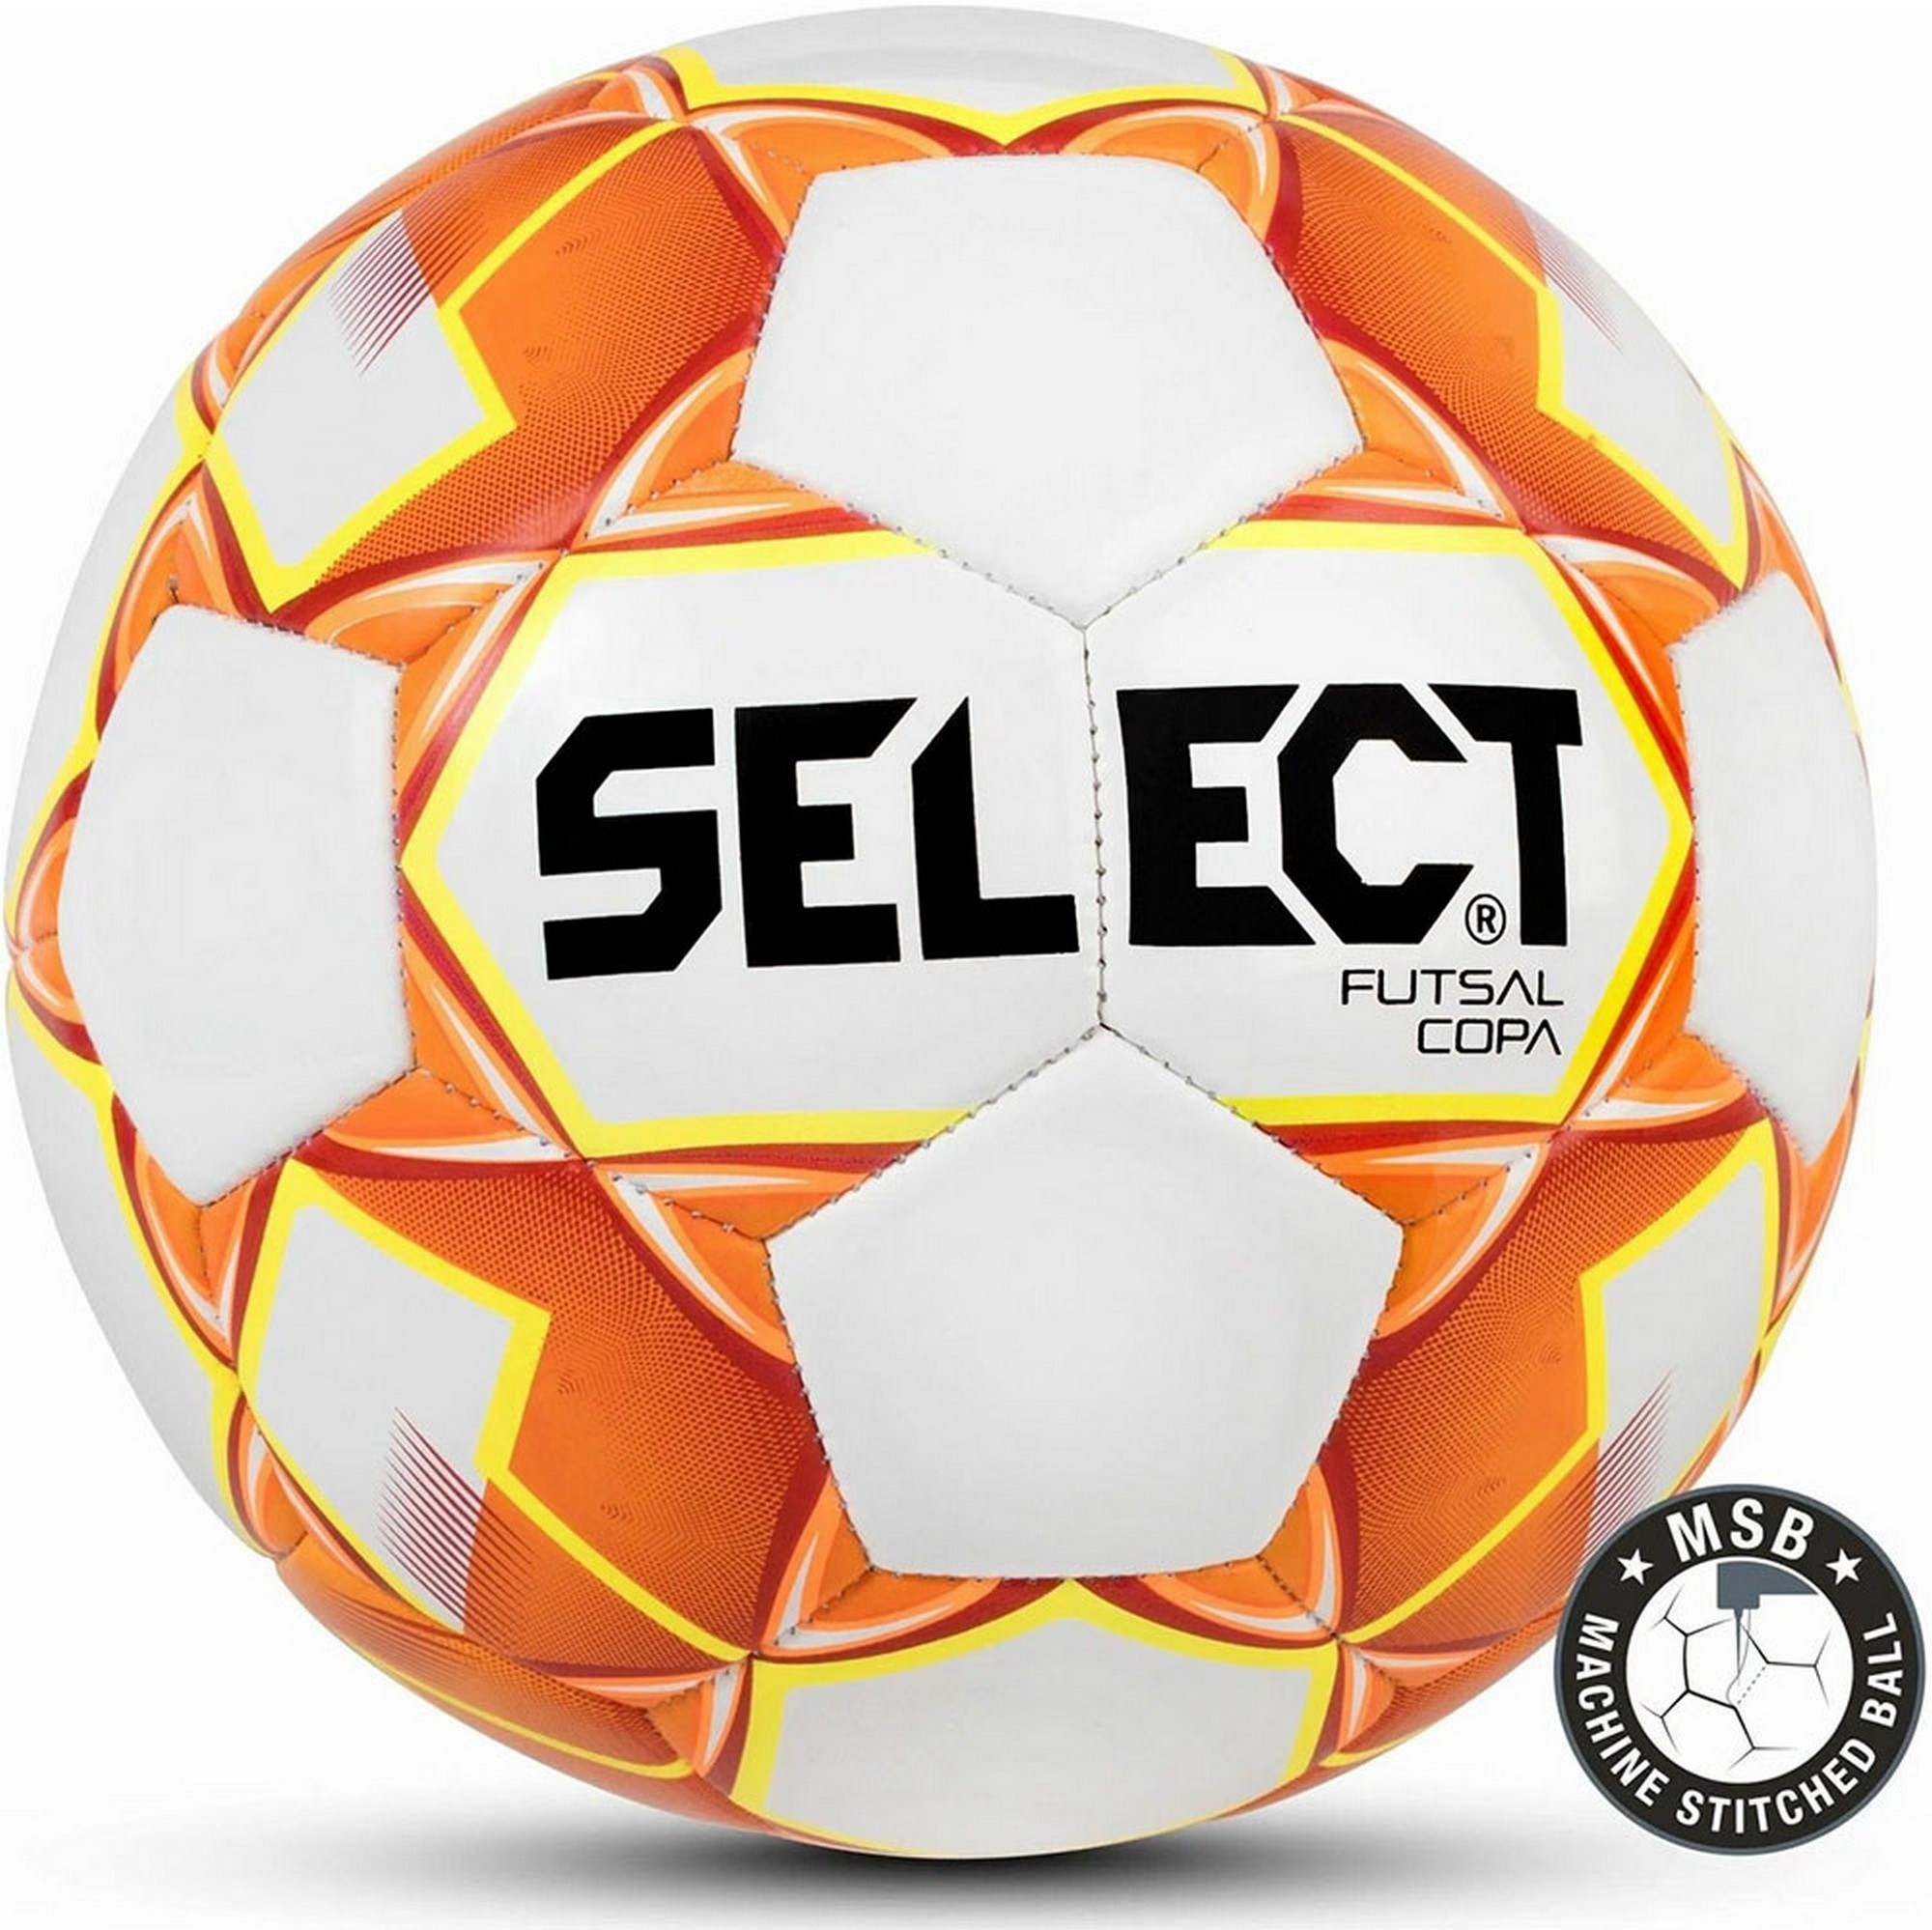   Select Futsal Copa 1093446006 .4